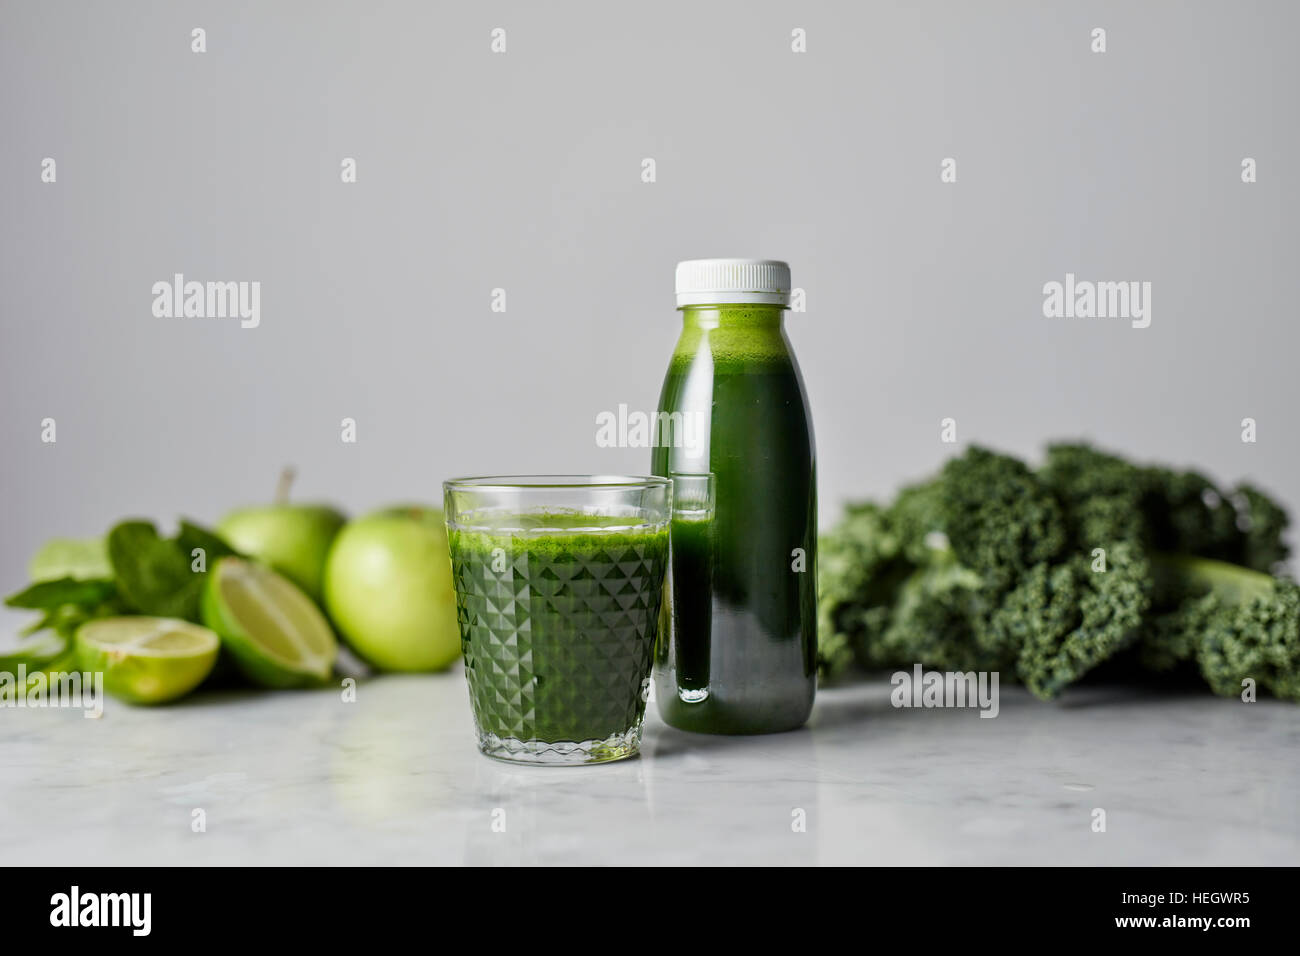 La col rizada verde fresco jugo de manzana orgánica saludable vitaminas kale lime vaso para beber una botella plástica Foto de stock